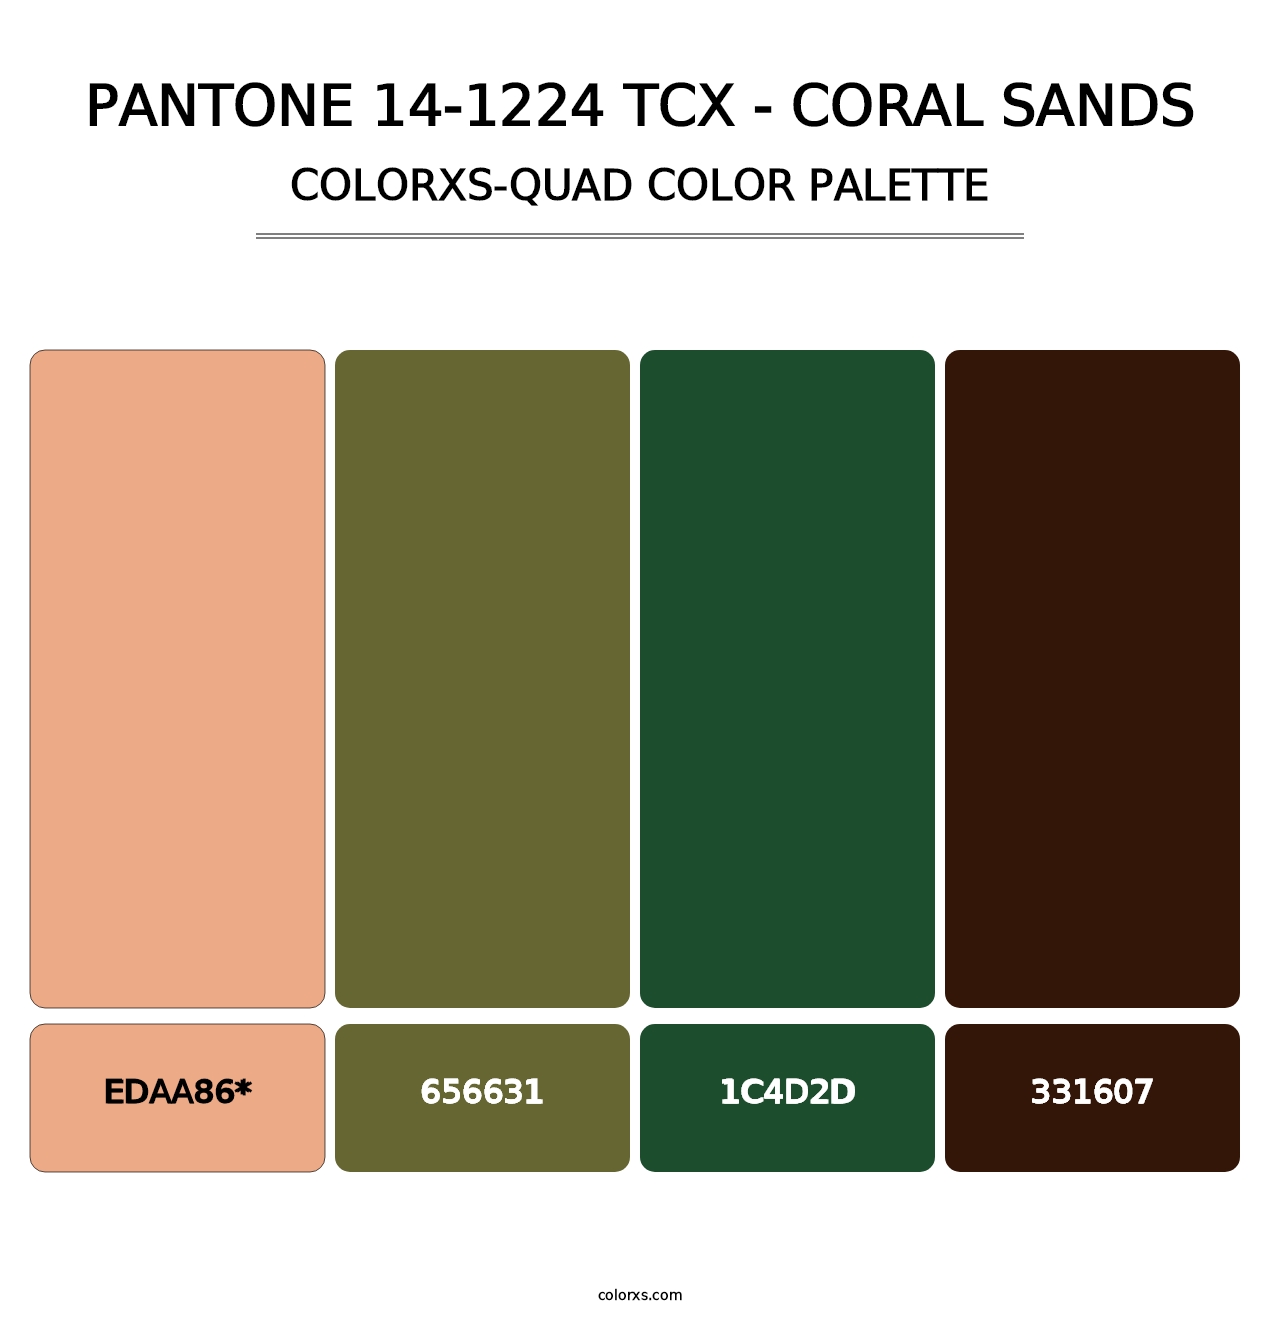 PANTONE 14-1224 TCX - Coral Sands - Colorxs Quad Palette